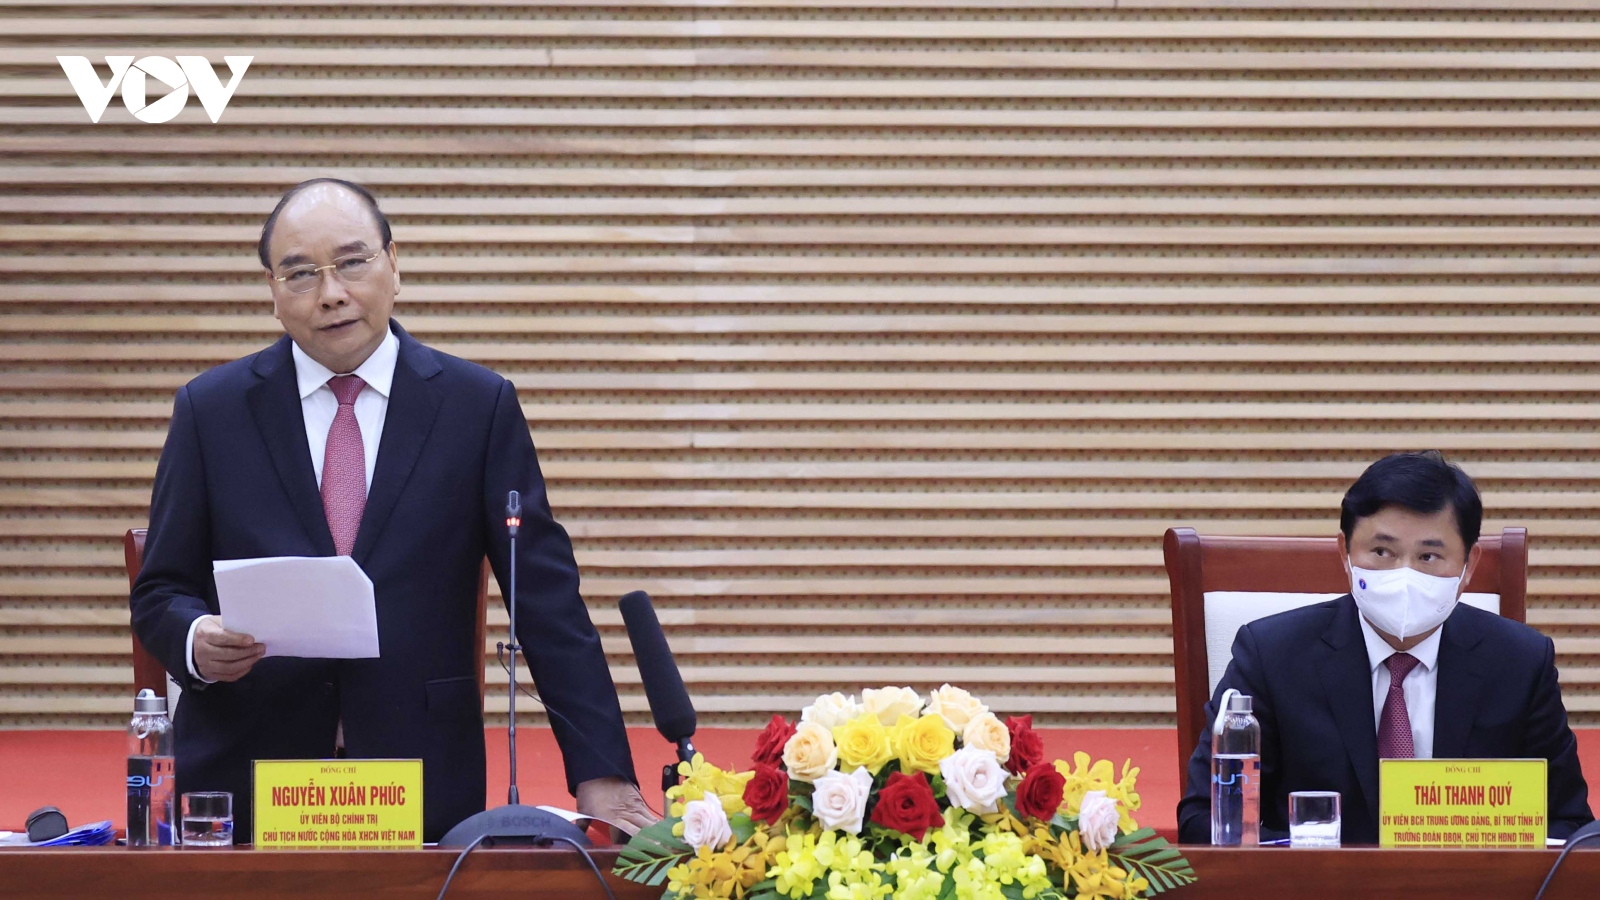 Chủ tịch nước: Nghệ An cần tận dụng lợi thế riêng để tạo kỳ tích sông Lam